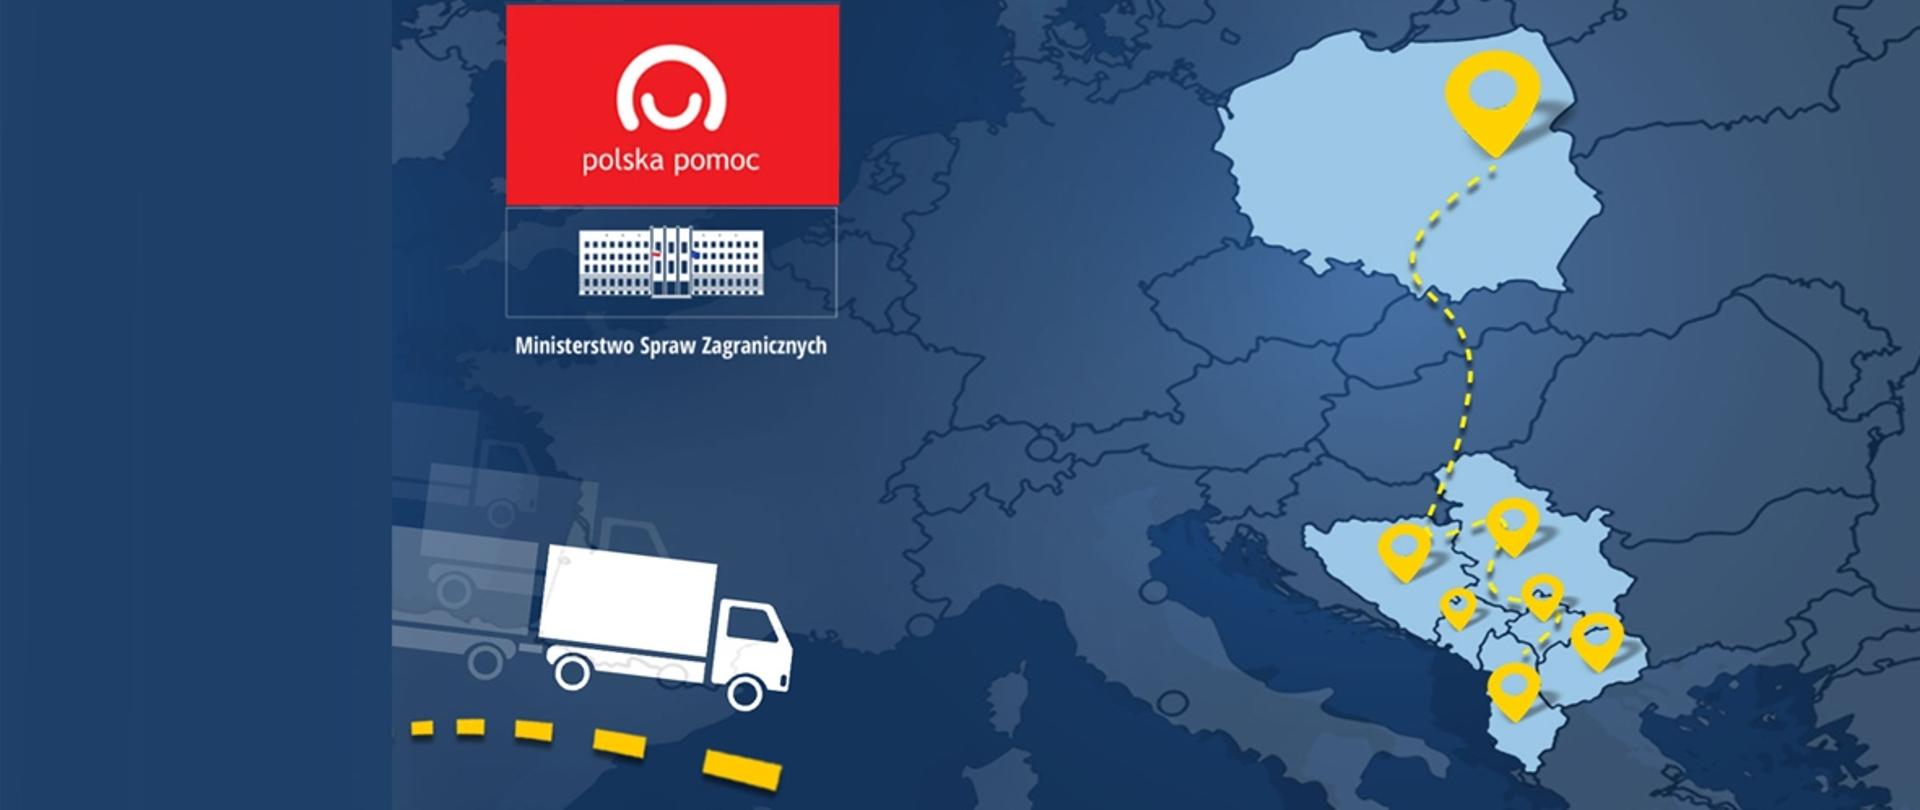 Grafika z ciężarówką, budynkiem MSZ, logo Polskiej pomocy, zaznaczeniem konturów Polski i państw Bałkanów Zachodnich na mapie Europy